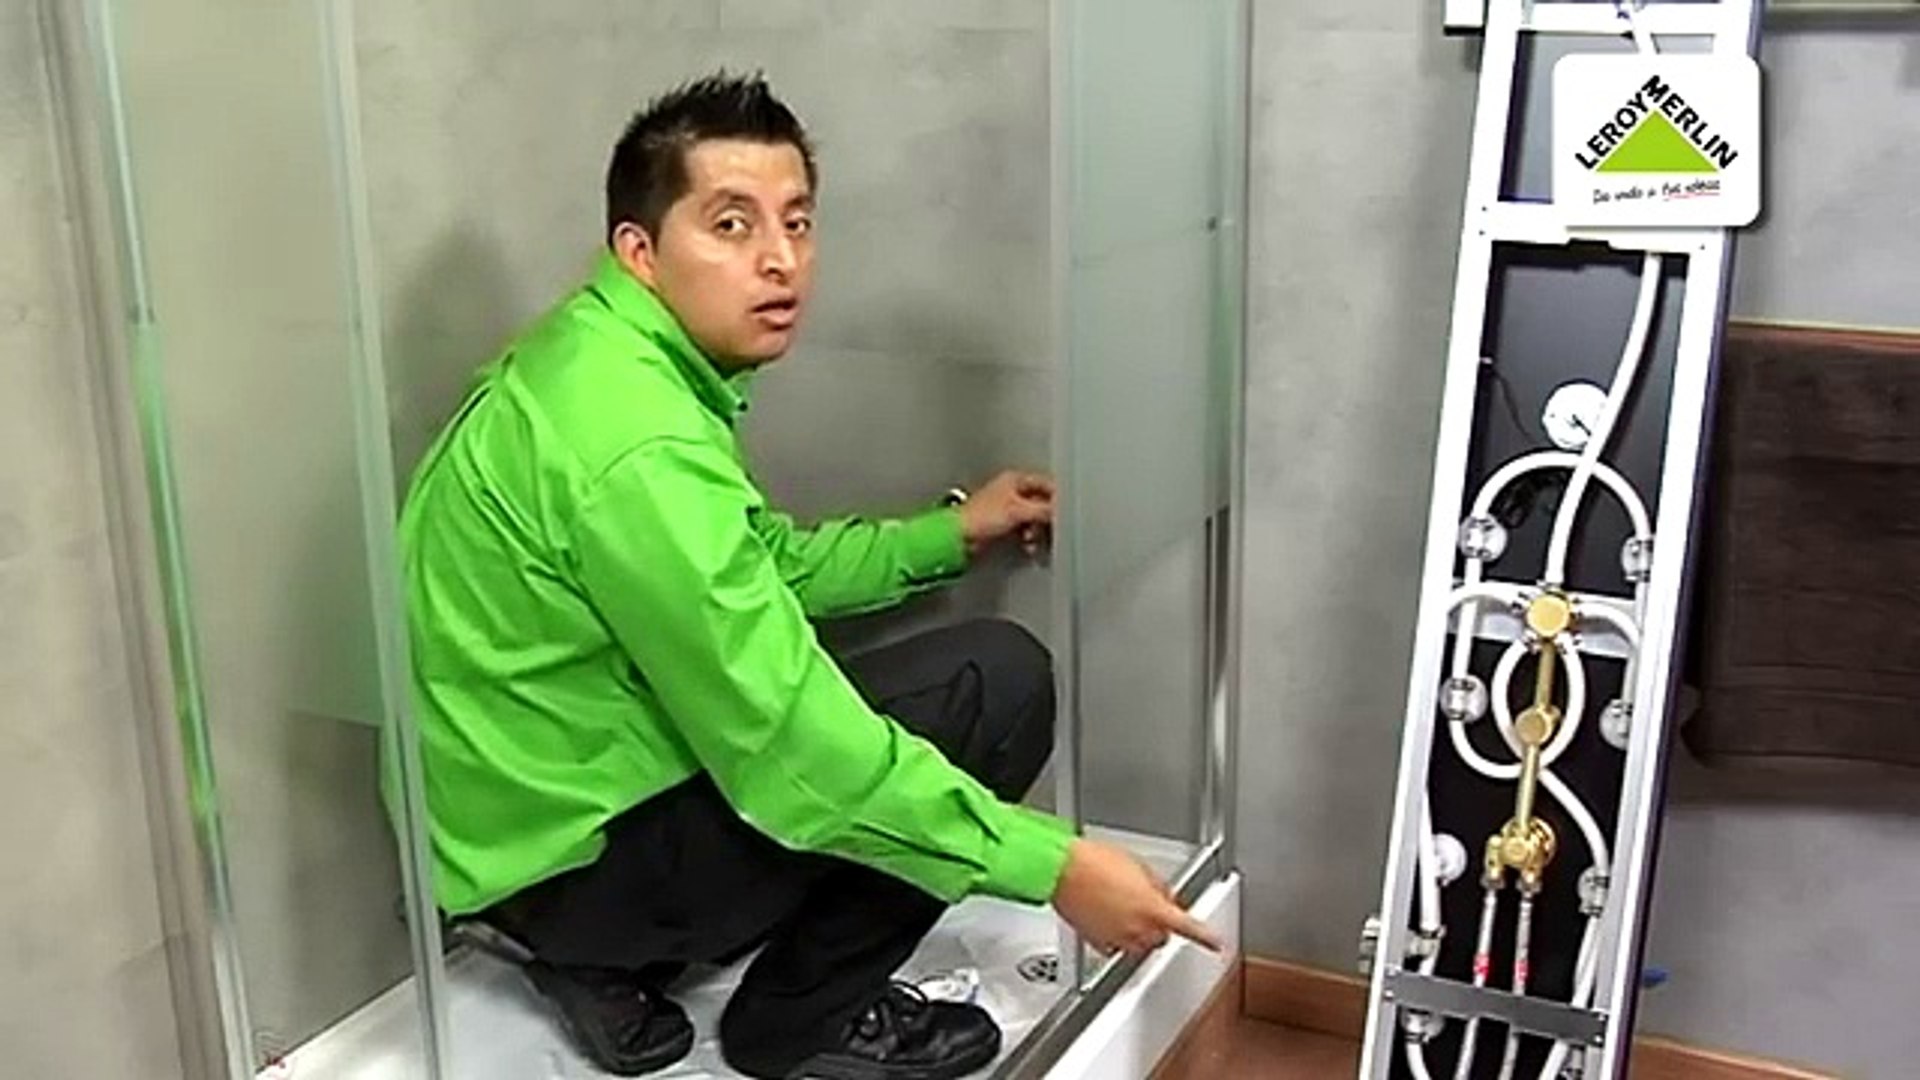 Cambiar un grifo de ducha por una columna de hidromasaje (Leroy Merlin) -  video Dailymotion